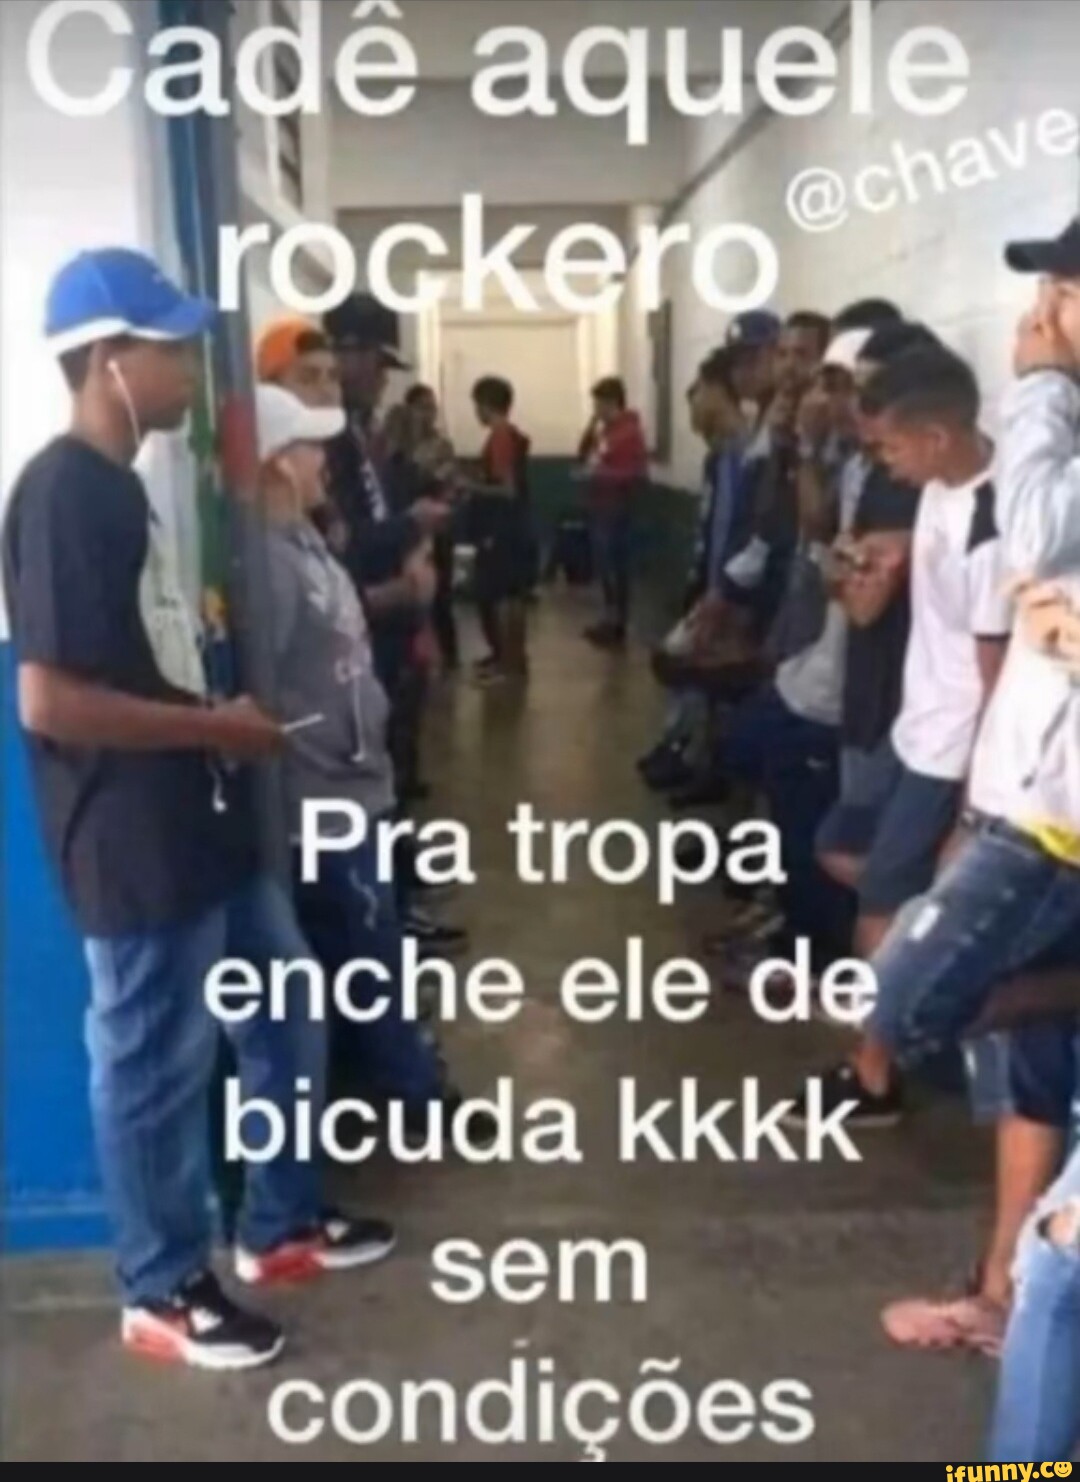 Aprendendo a diferença entre Rockeiro Rosqueiro - não curte funk mas não  se - odeia funk e perde